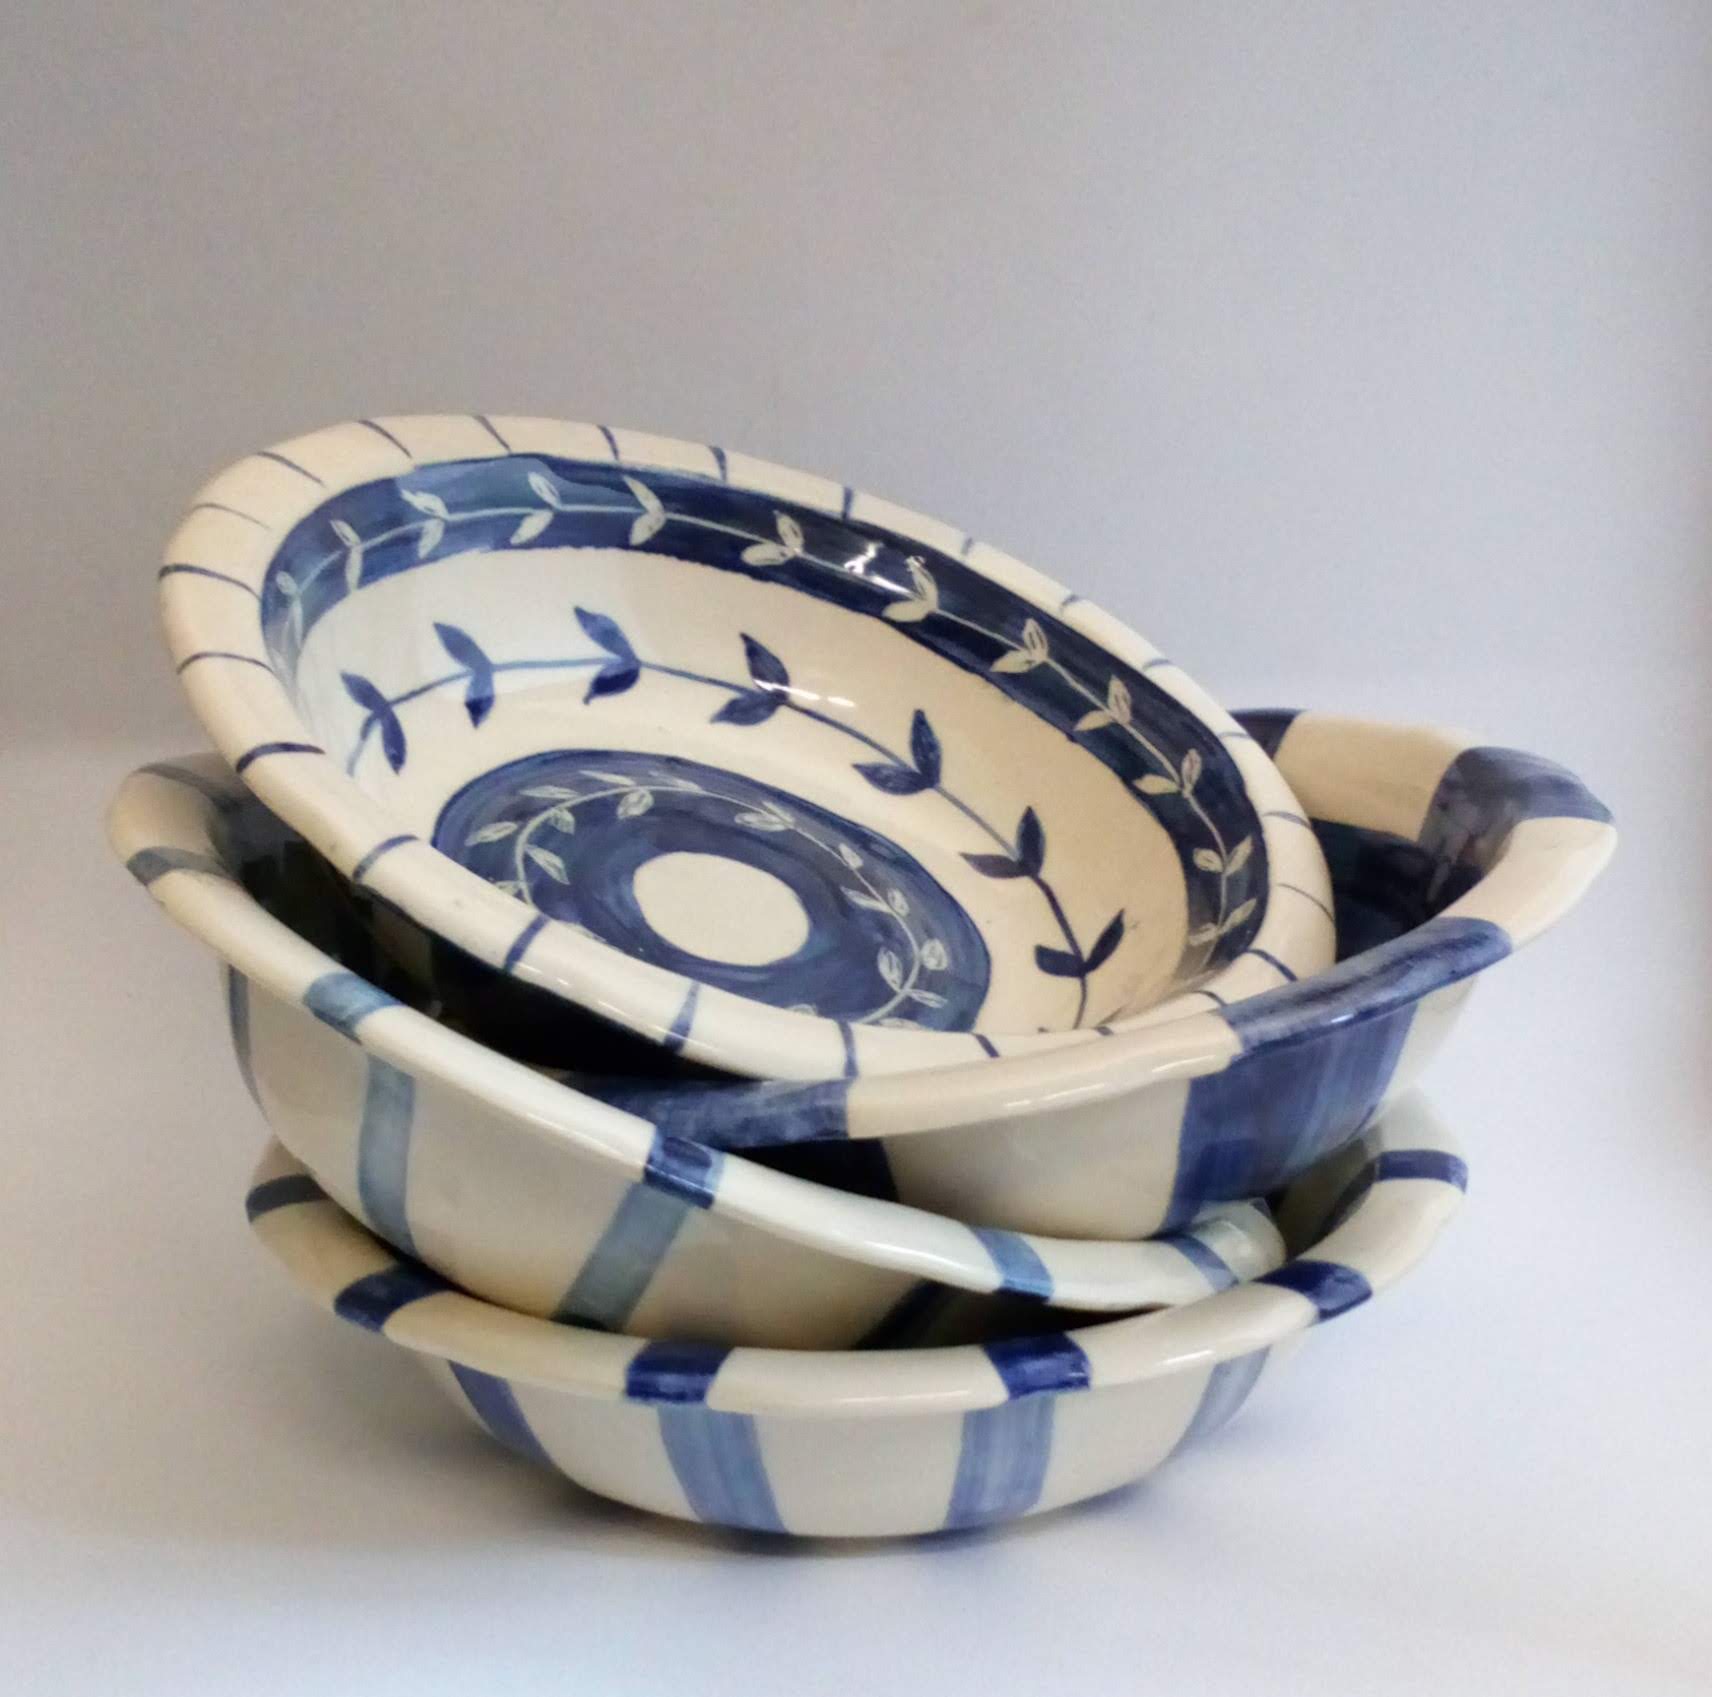 Taza plato colador y tapa de cerámica artesanal GEA.